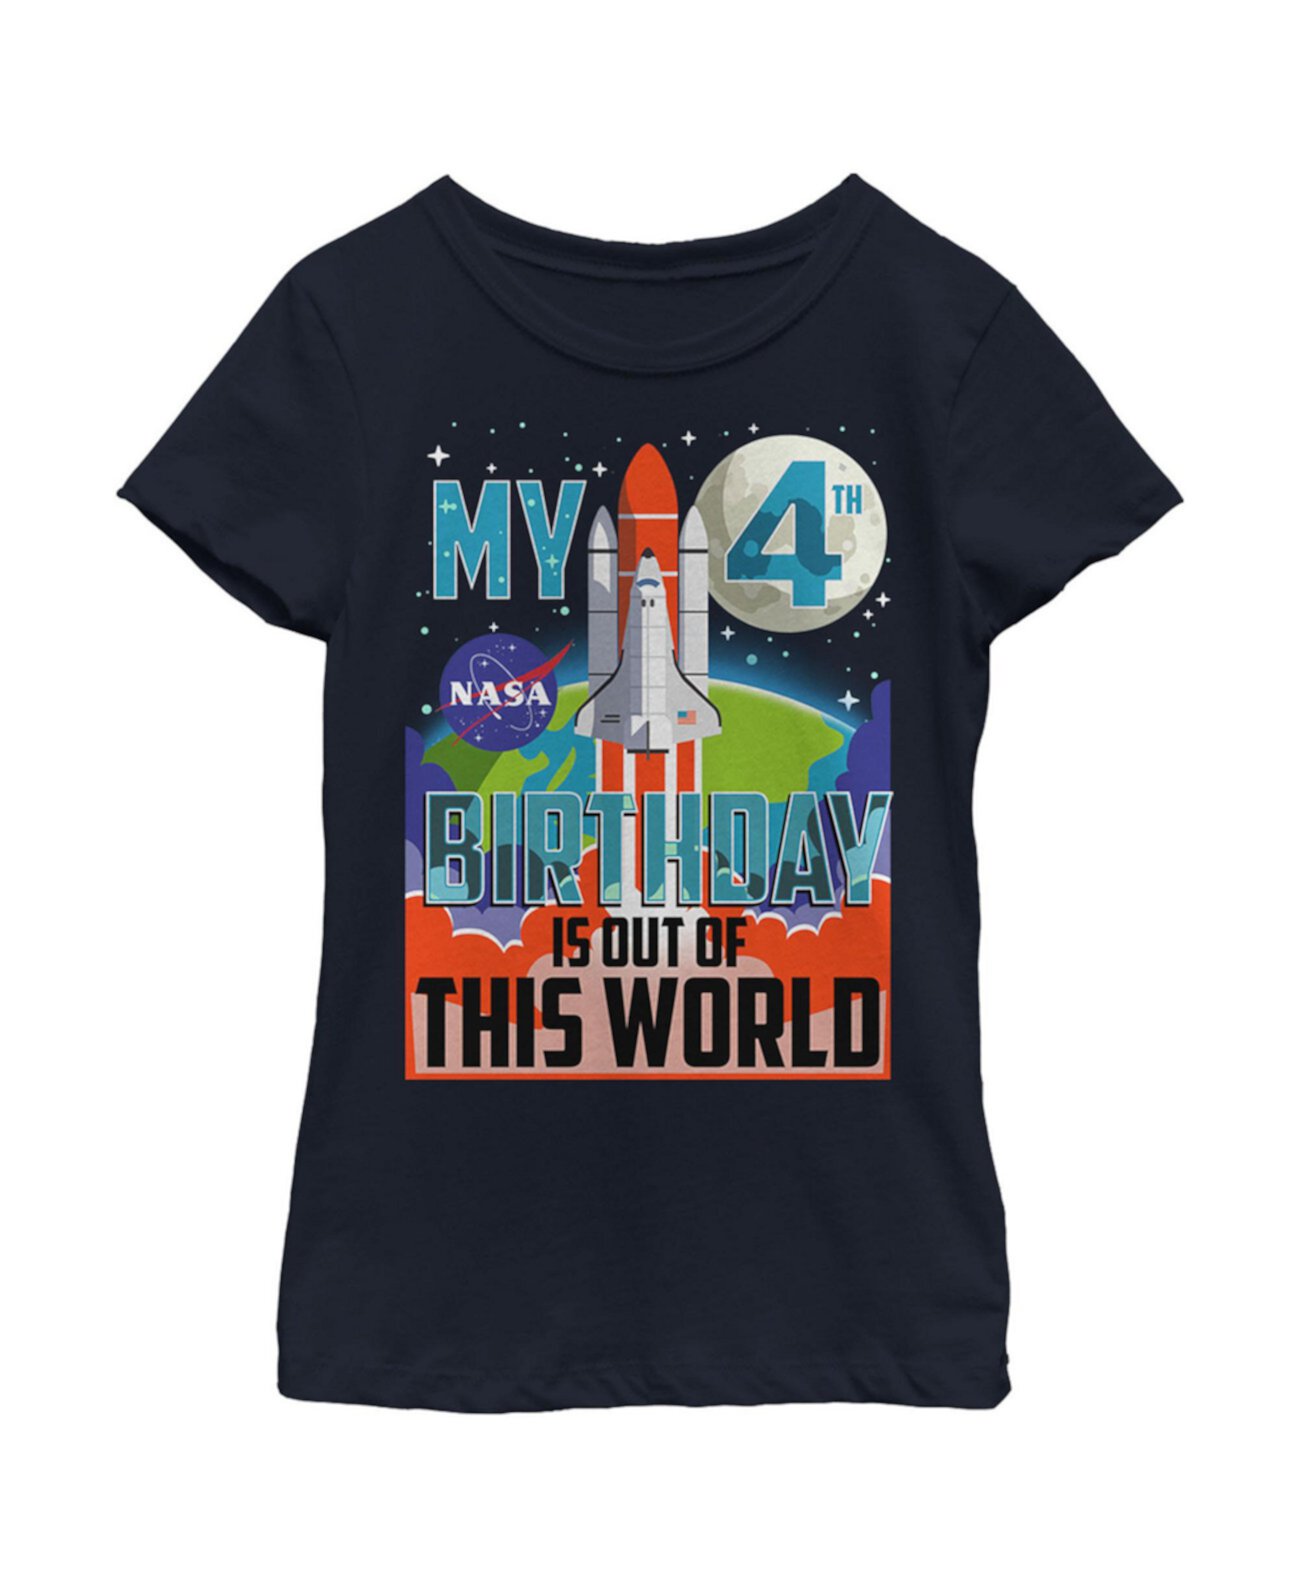 Детская футболка с плакатом «Мой 4-й день рождения для девочки» из мира NASA